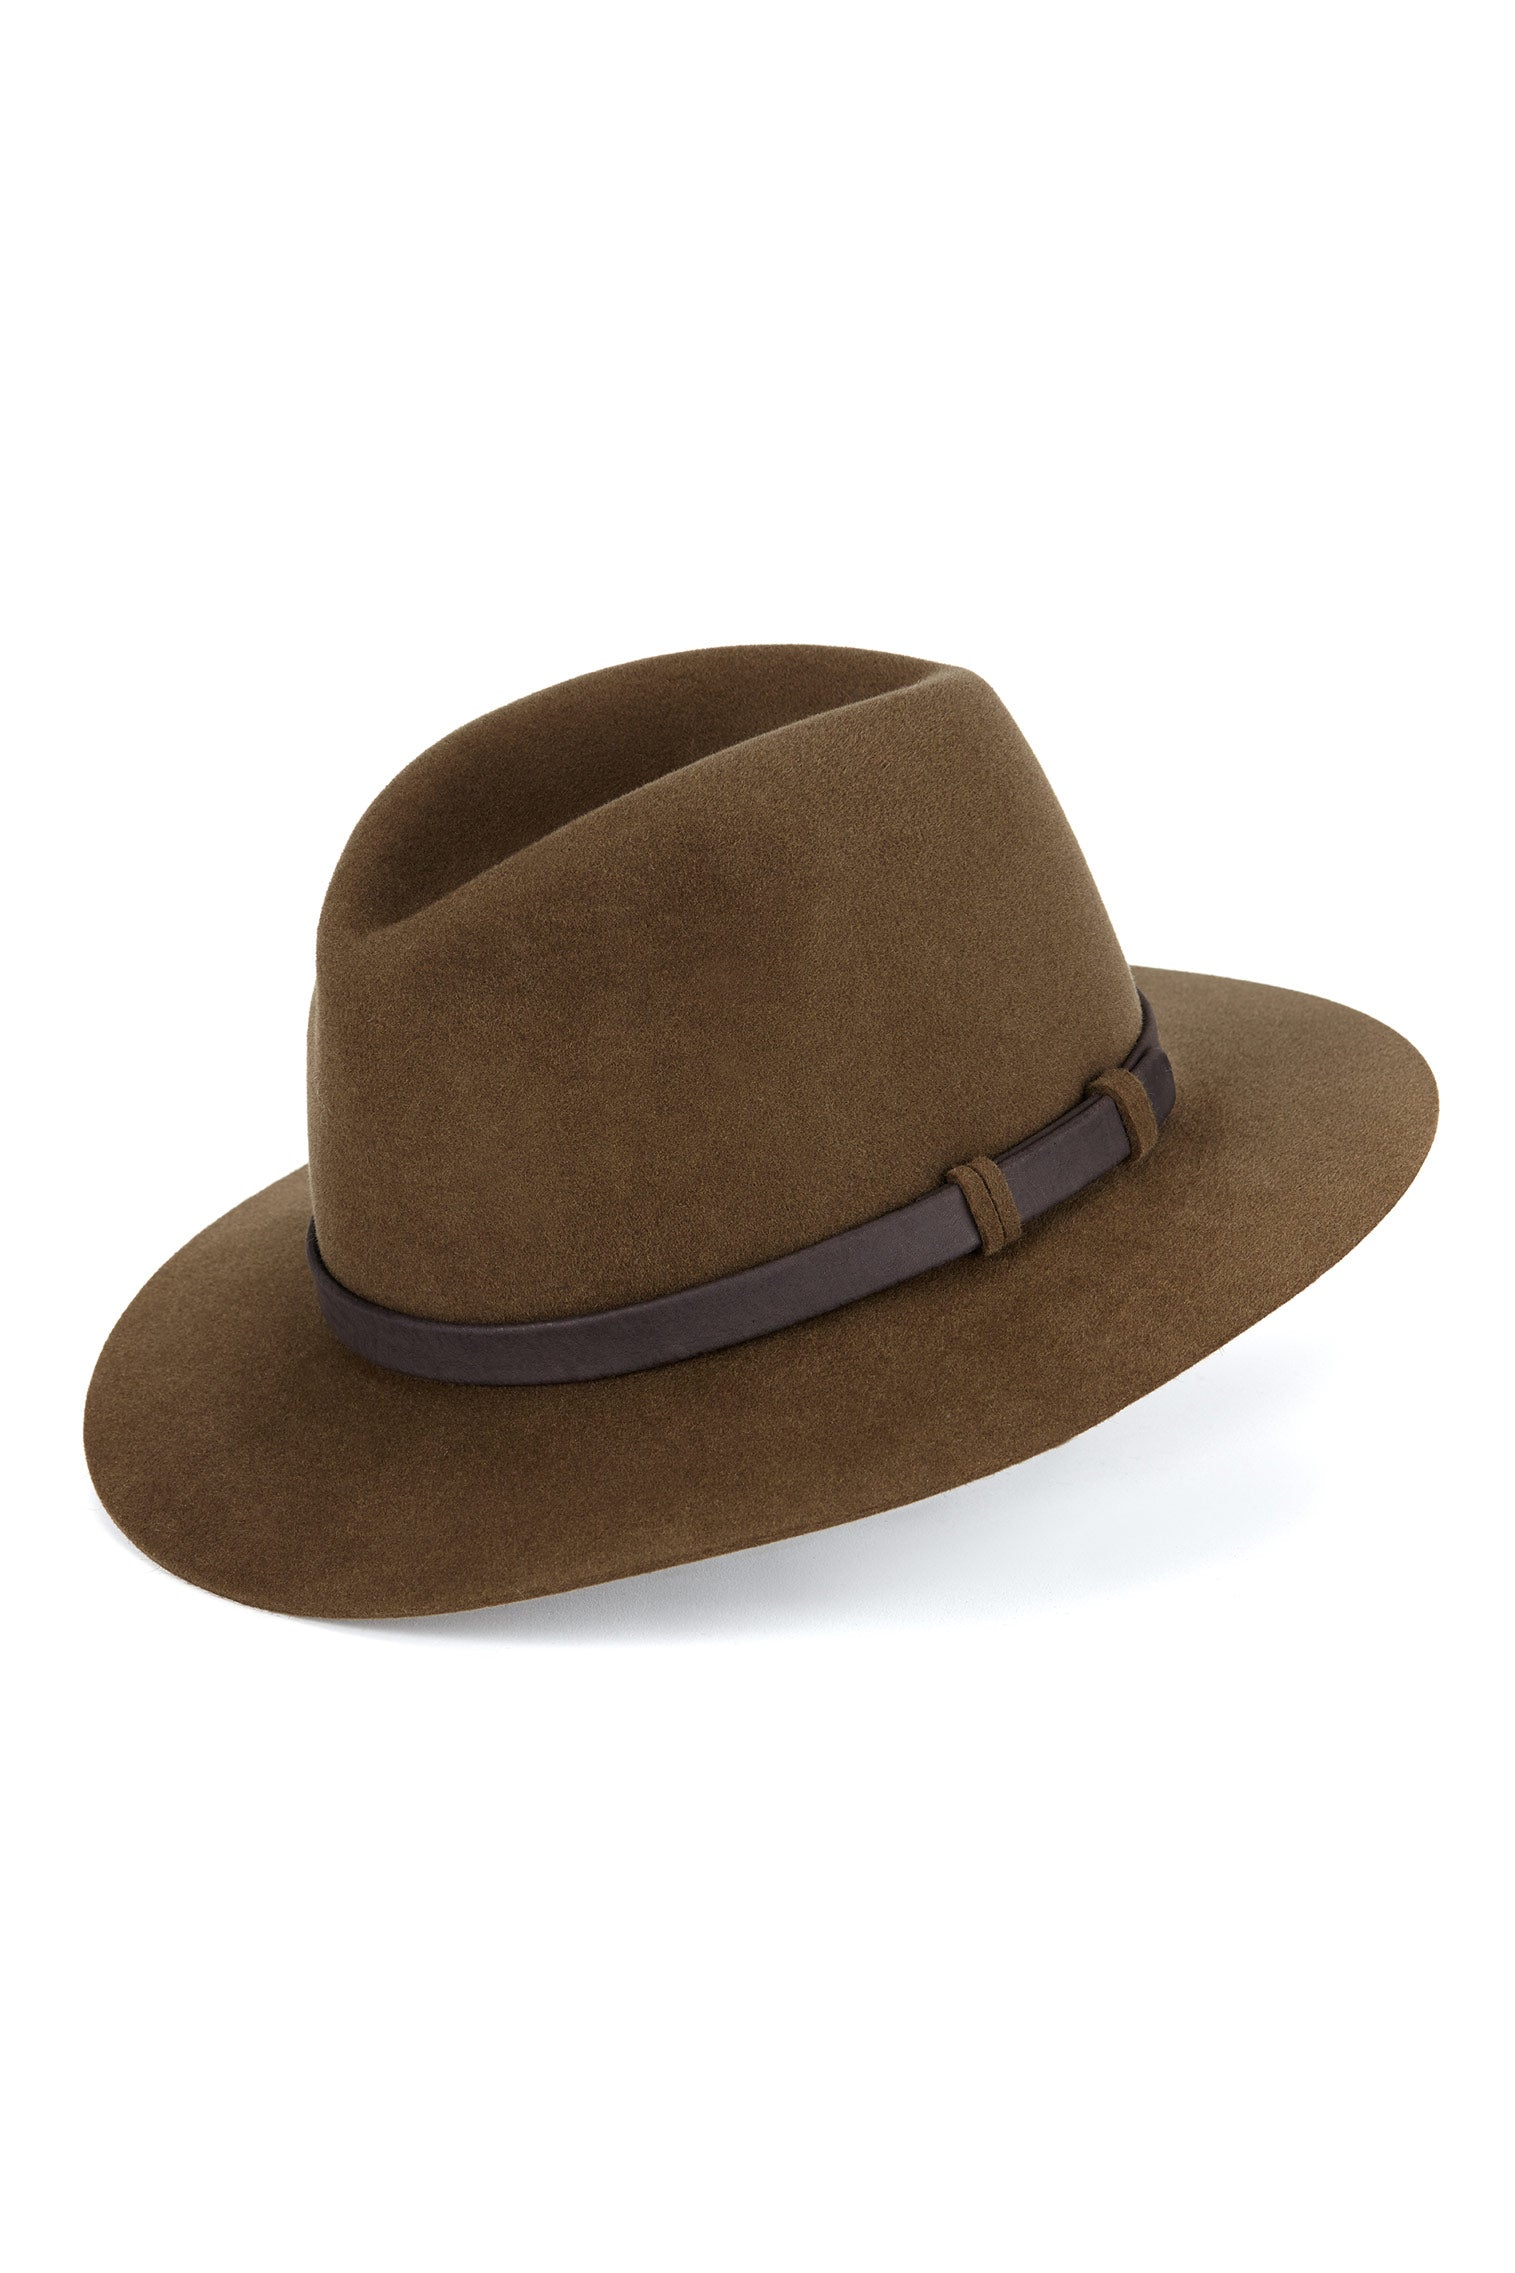 Chepstow Trilby - Men's Hats - Lock & Co. Hatters London UK